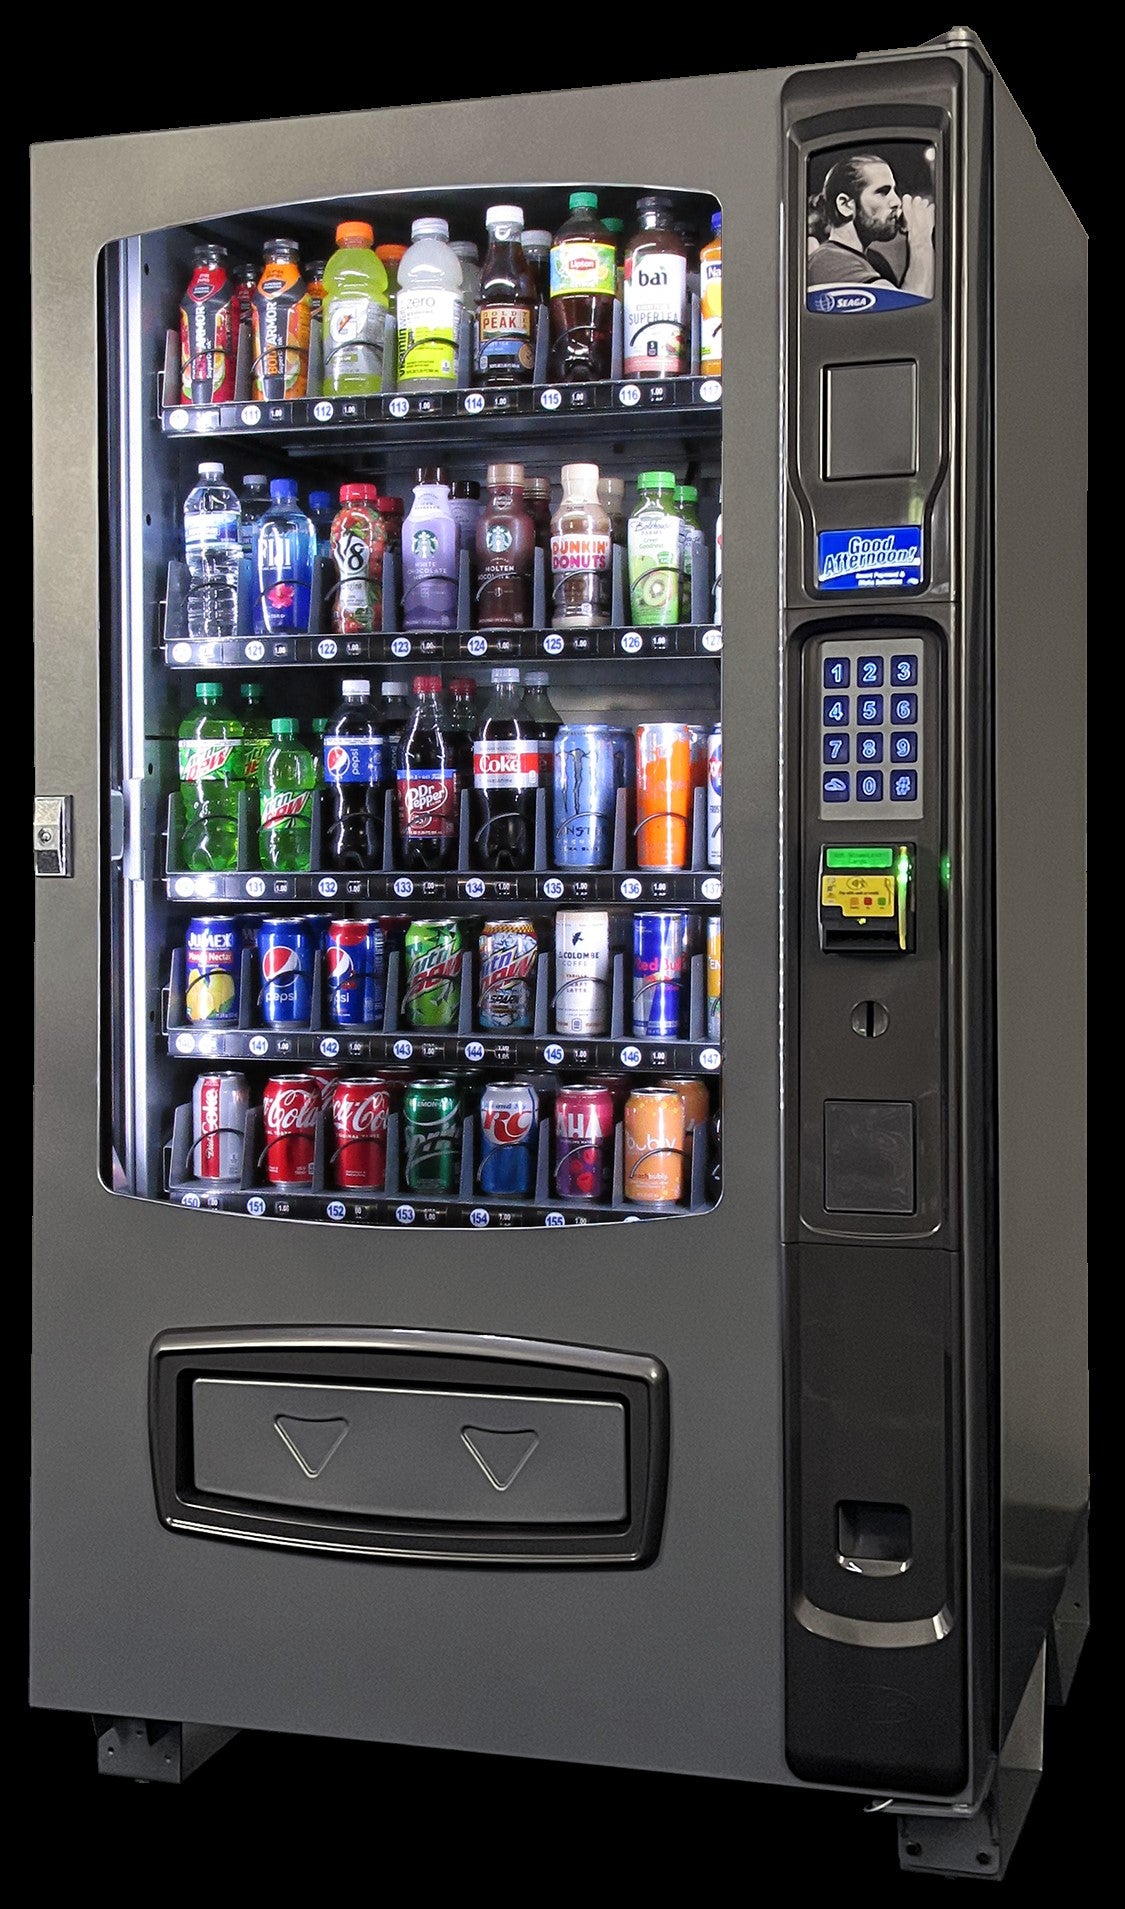 Seaga Envision ENV5B Drink Vending Machine